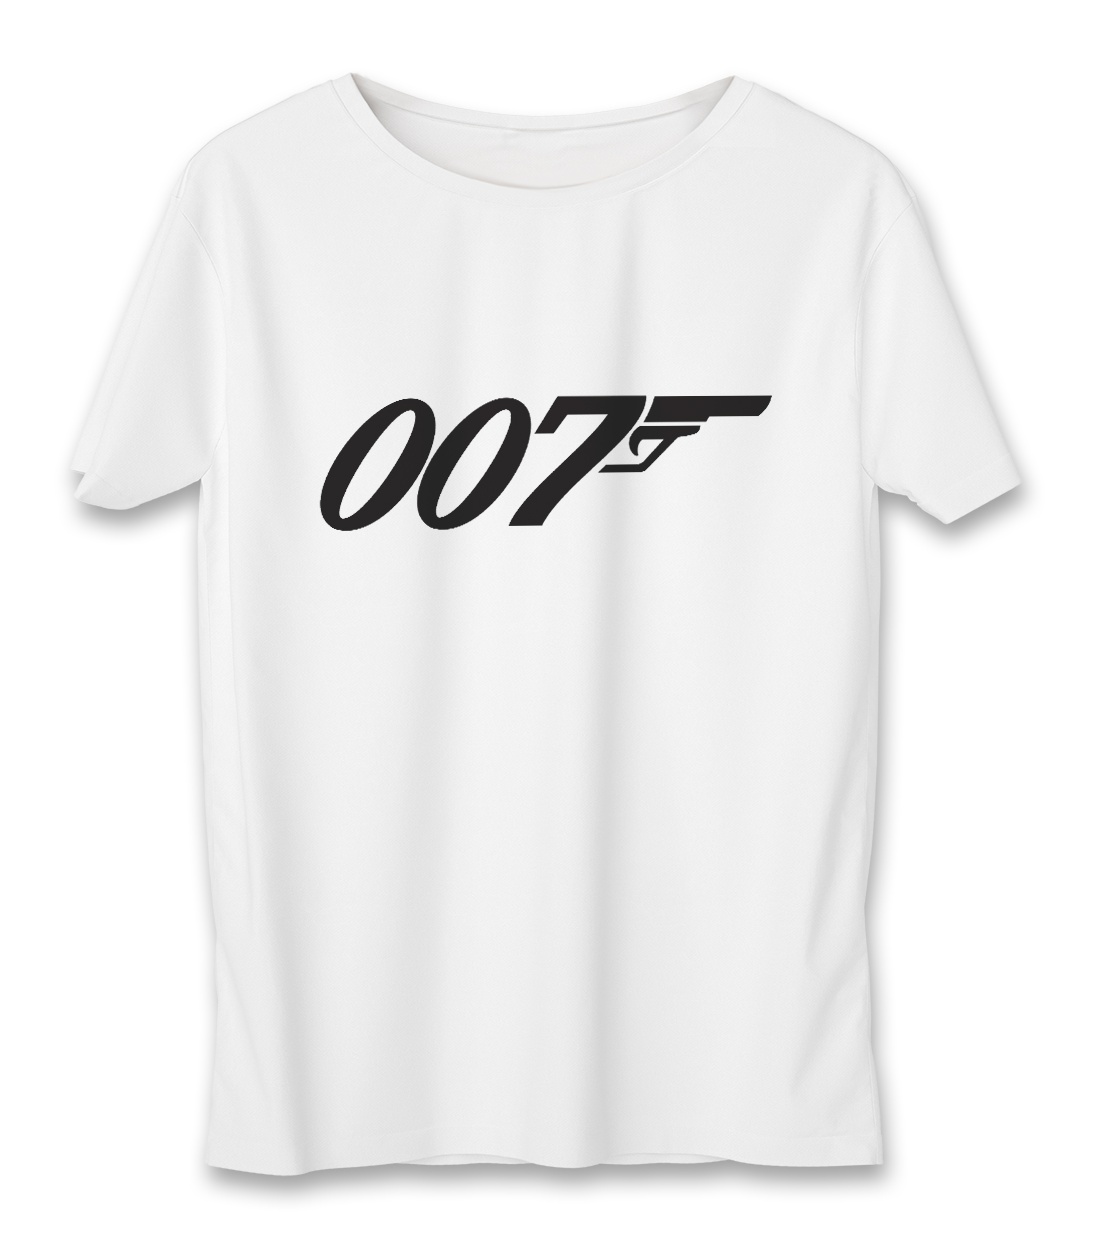 تی شرت مردانه به رسم طرح جیمز باند کد 3337